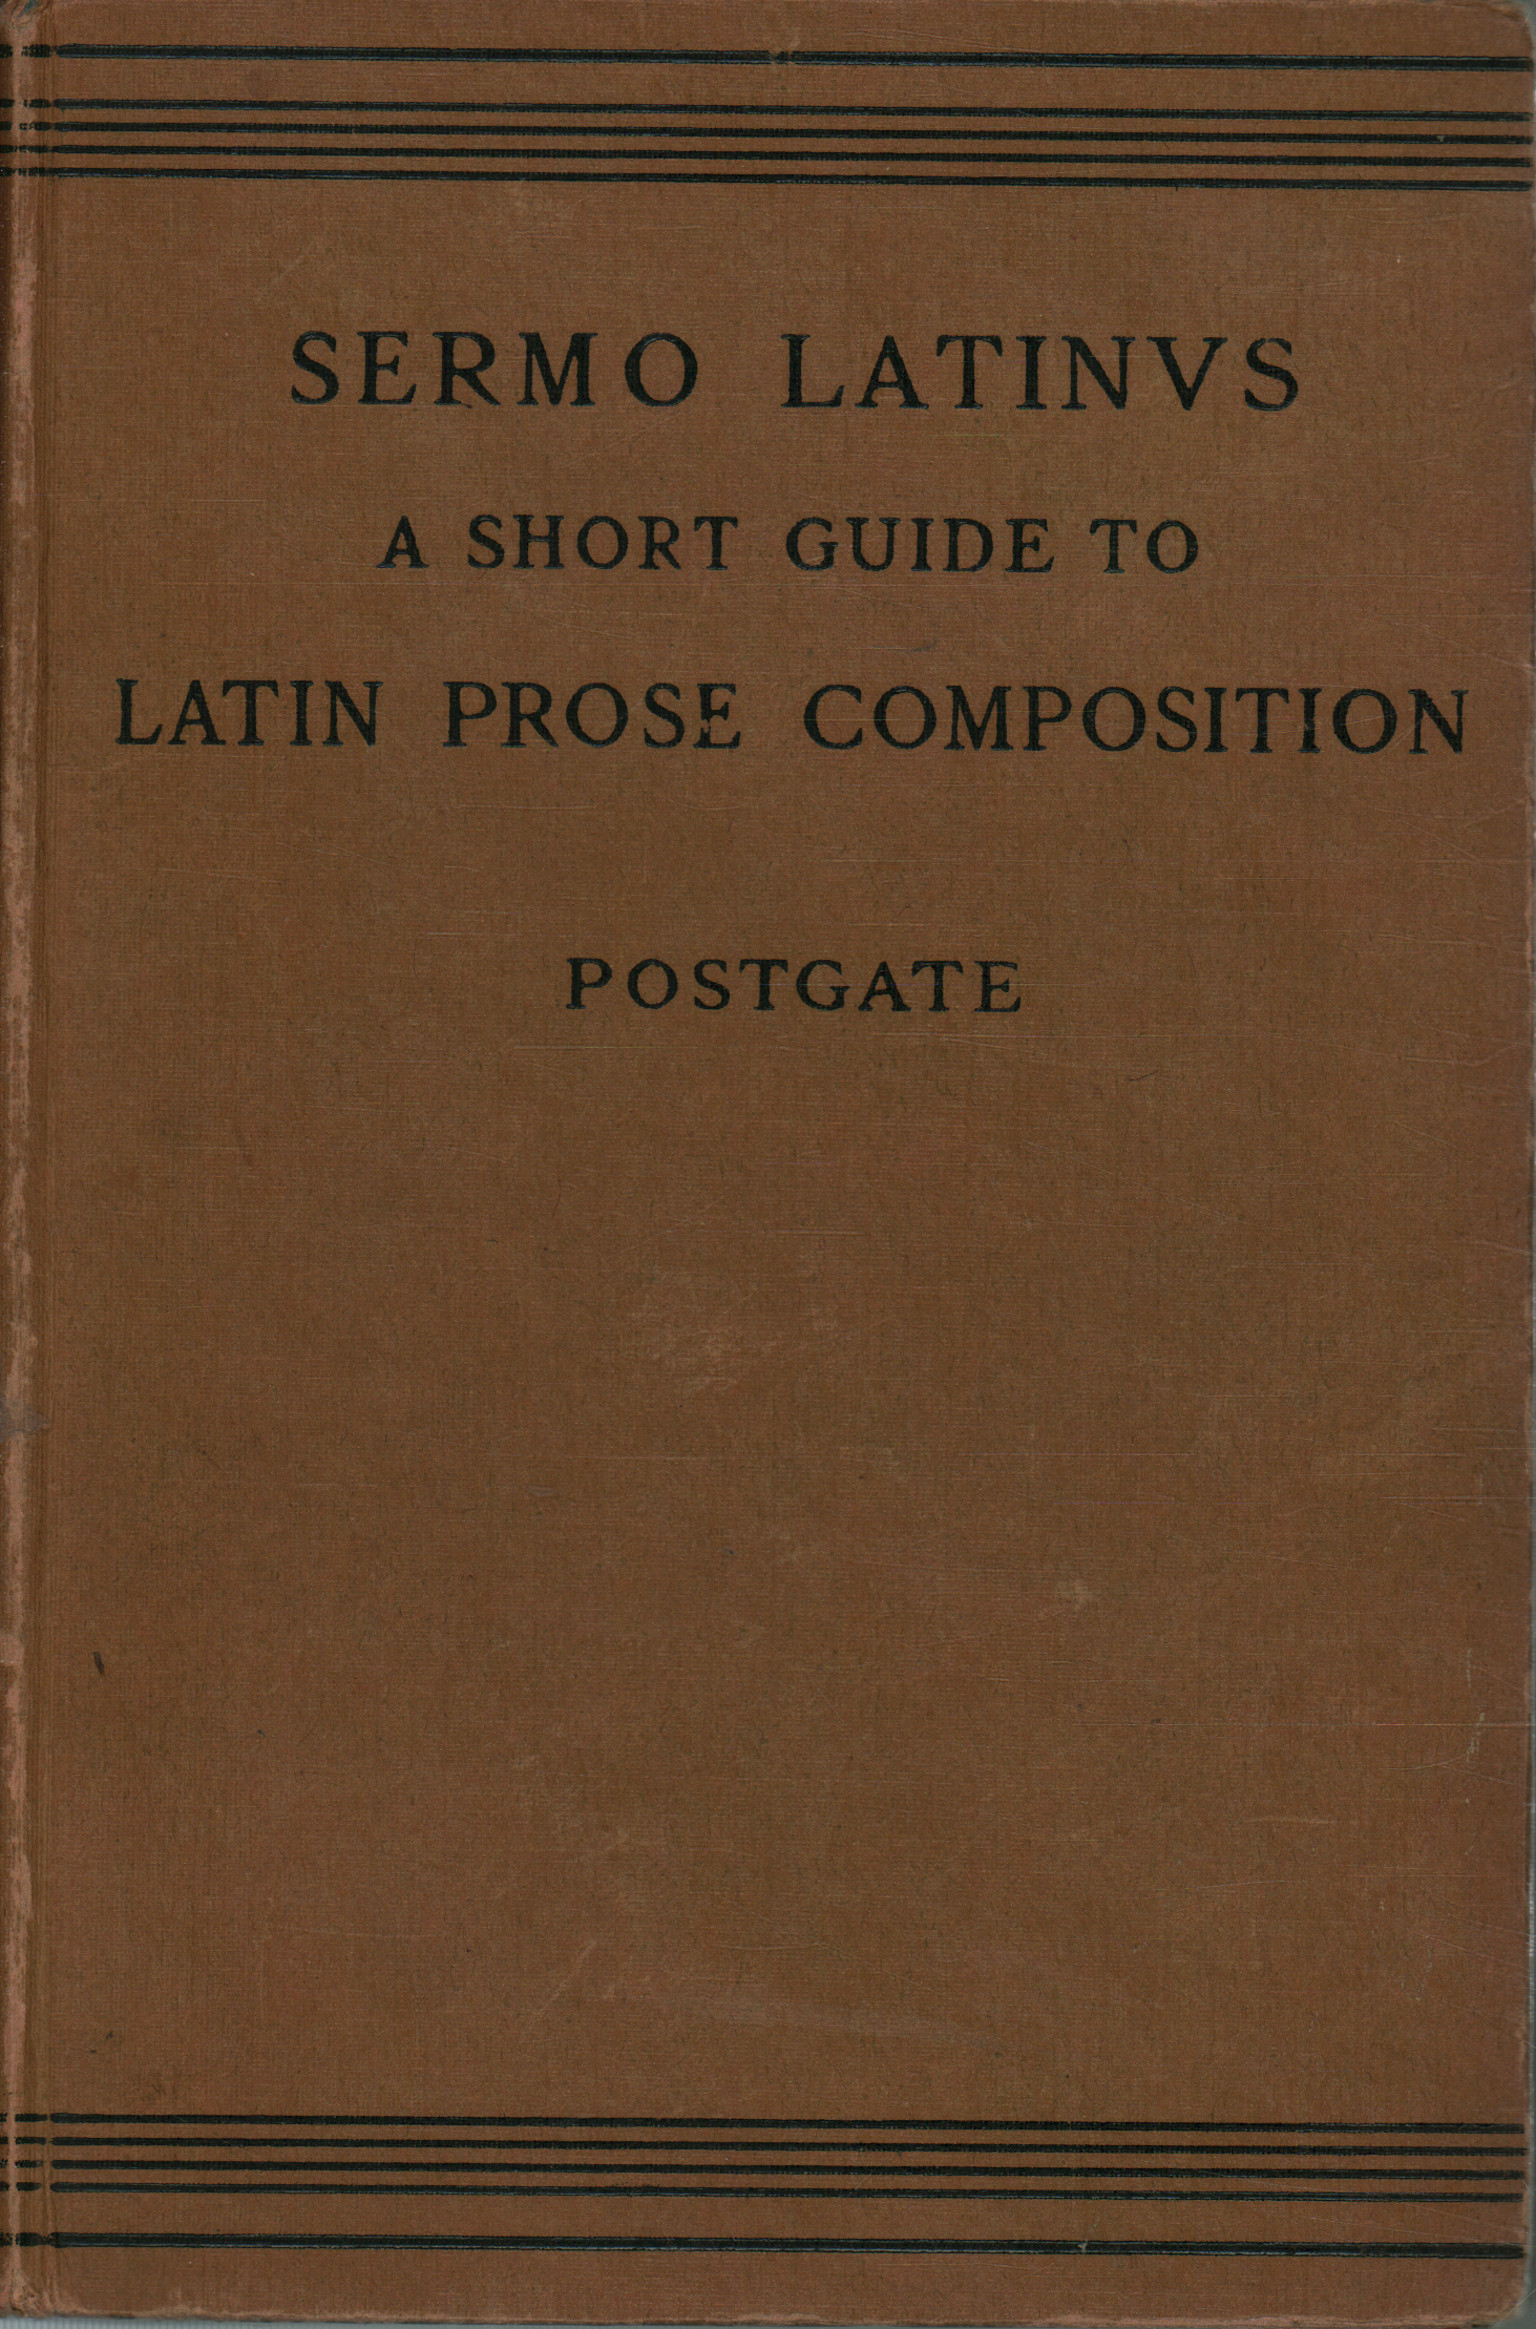 Sermo latinus. Eine kurze Anleitung zu lateinischen Prosa-Kompositionen, J. P. Postgate